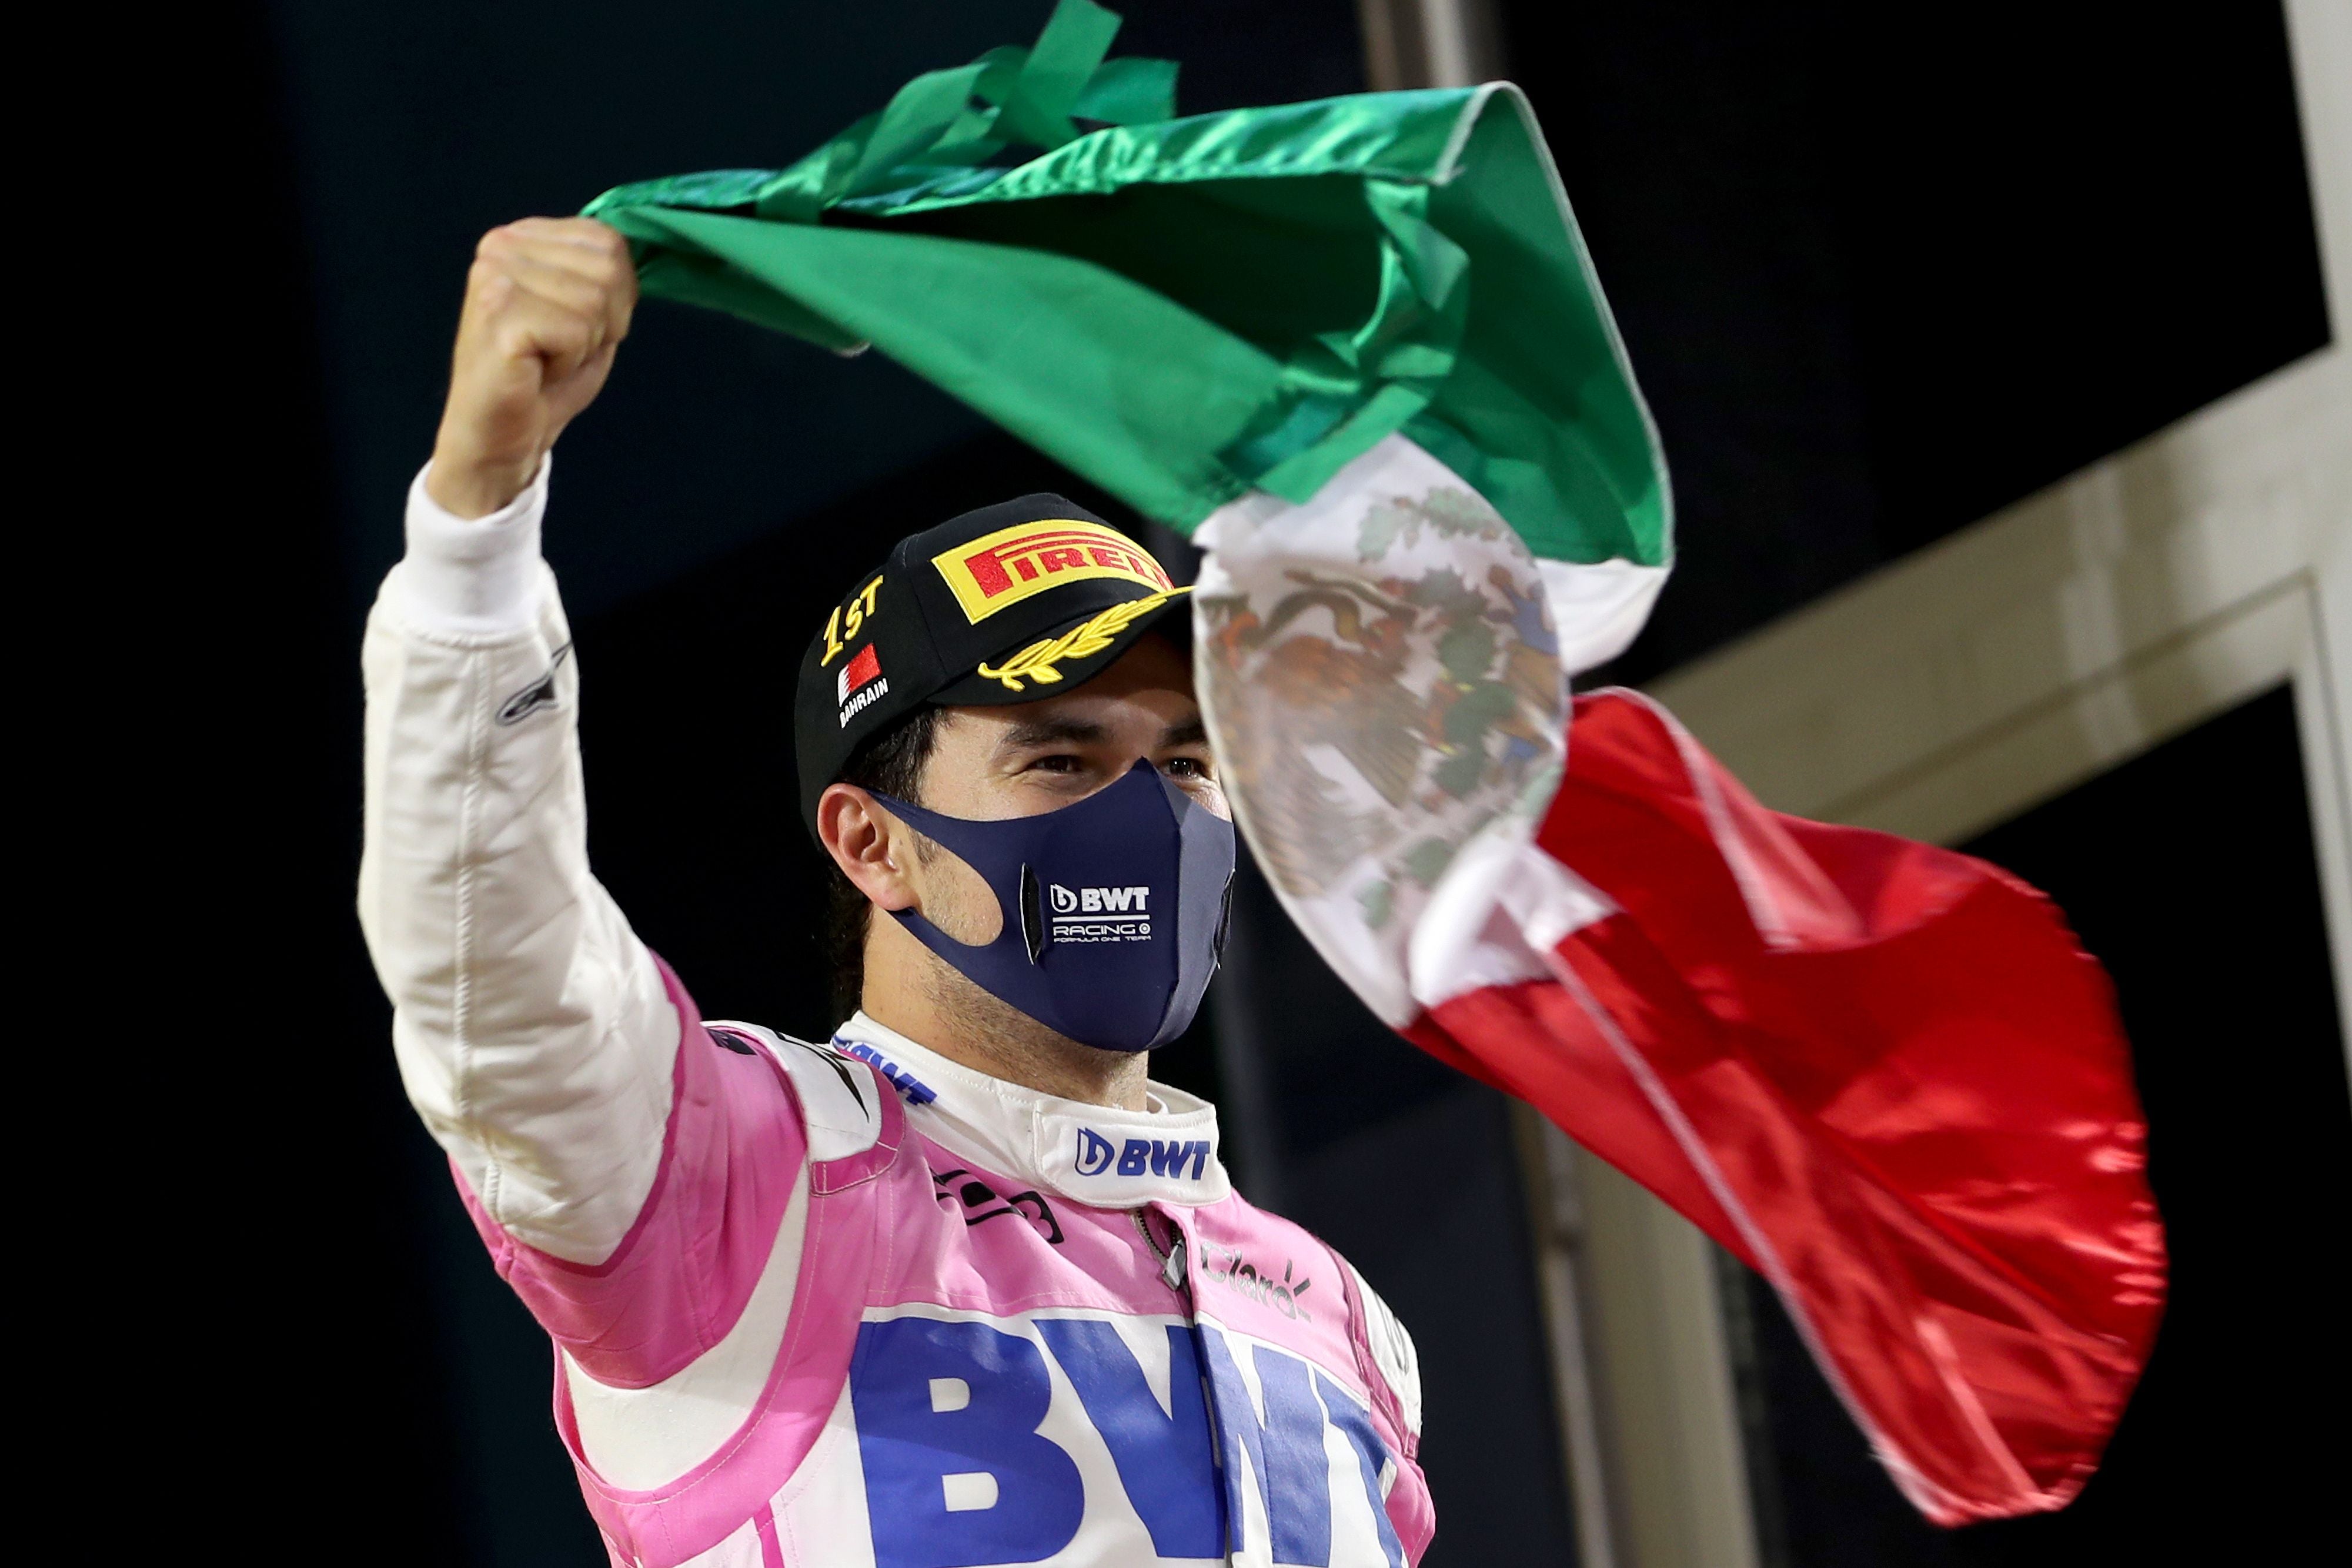 La victoria de Pérez en el Gran Premio de Sakhir fue clave para que llegara a Red Bull